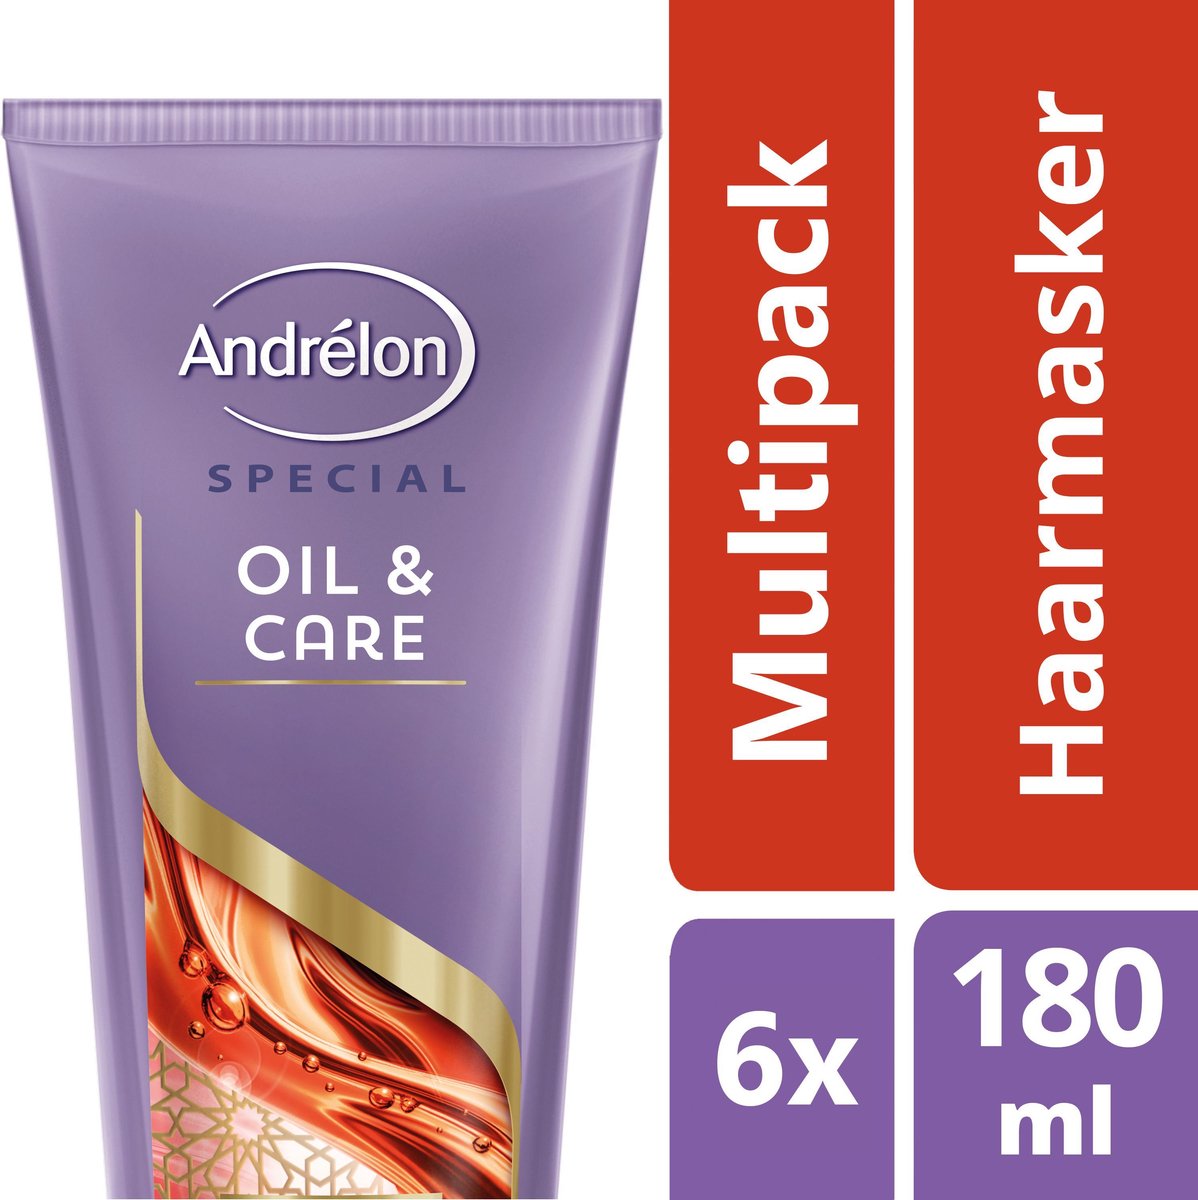 Andrélon Oil & Care - 6 x 180 ml - 1-Minuut Haarmasker - Voordeelverpakking  | bol